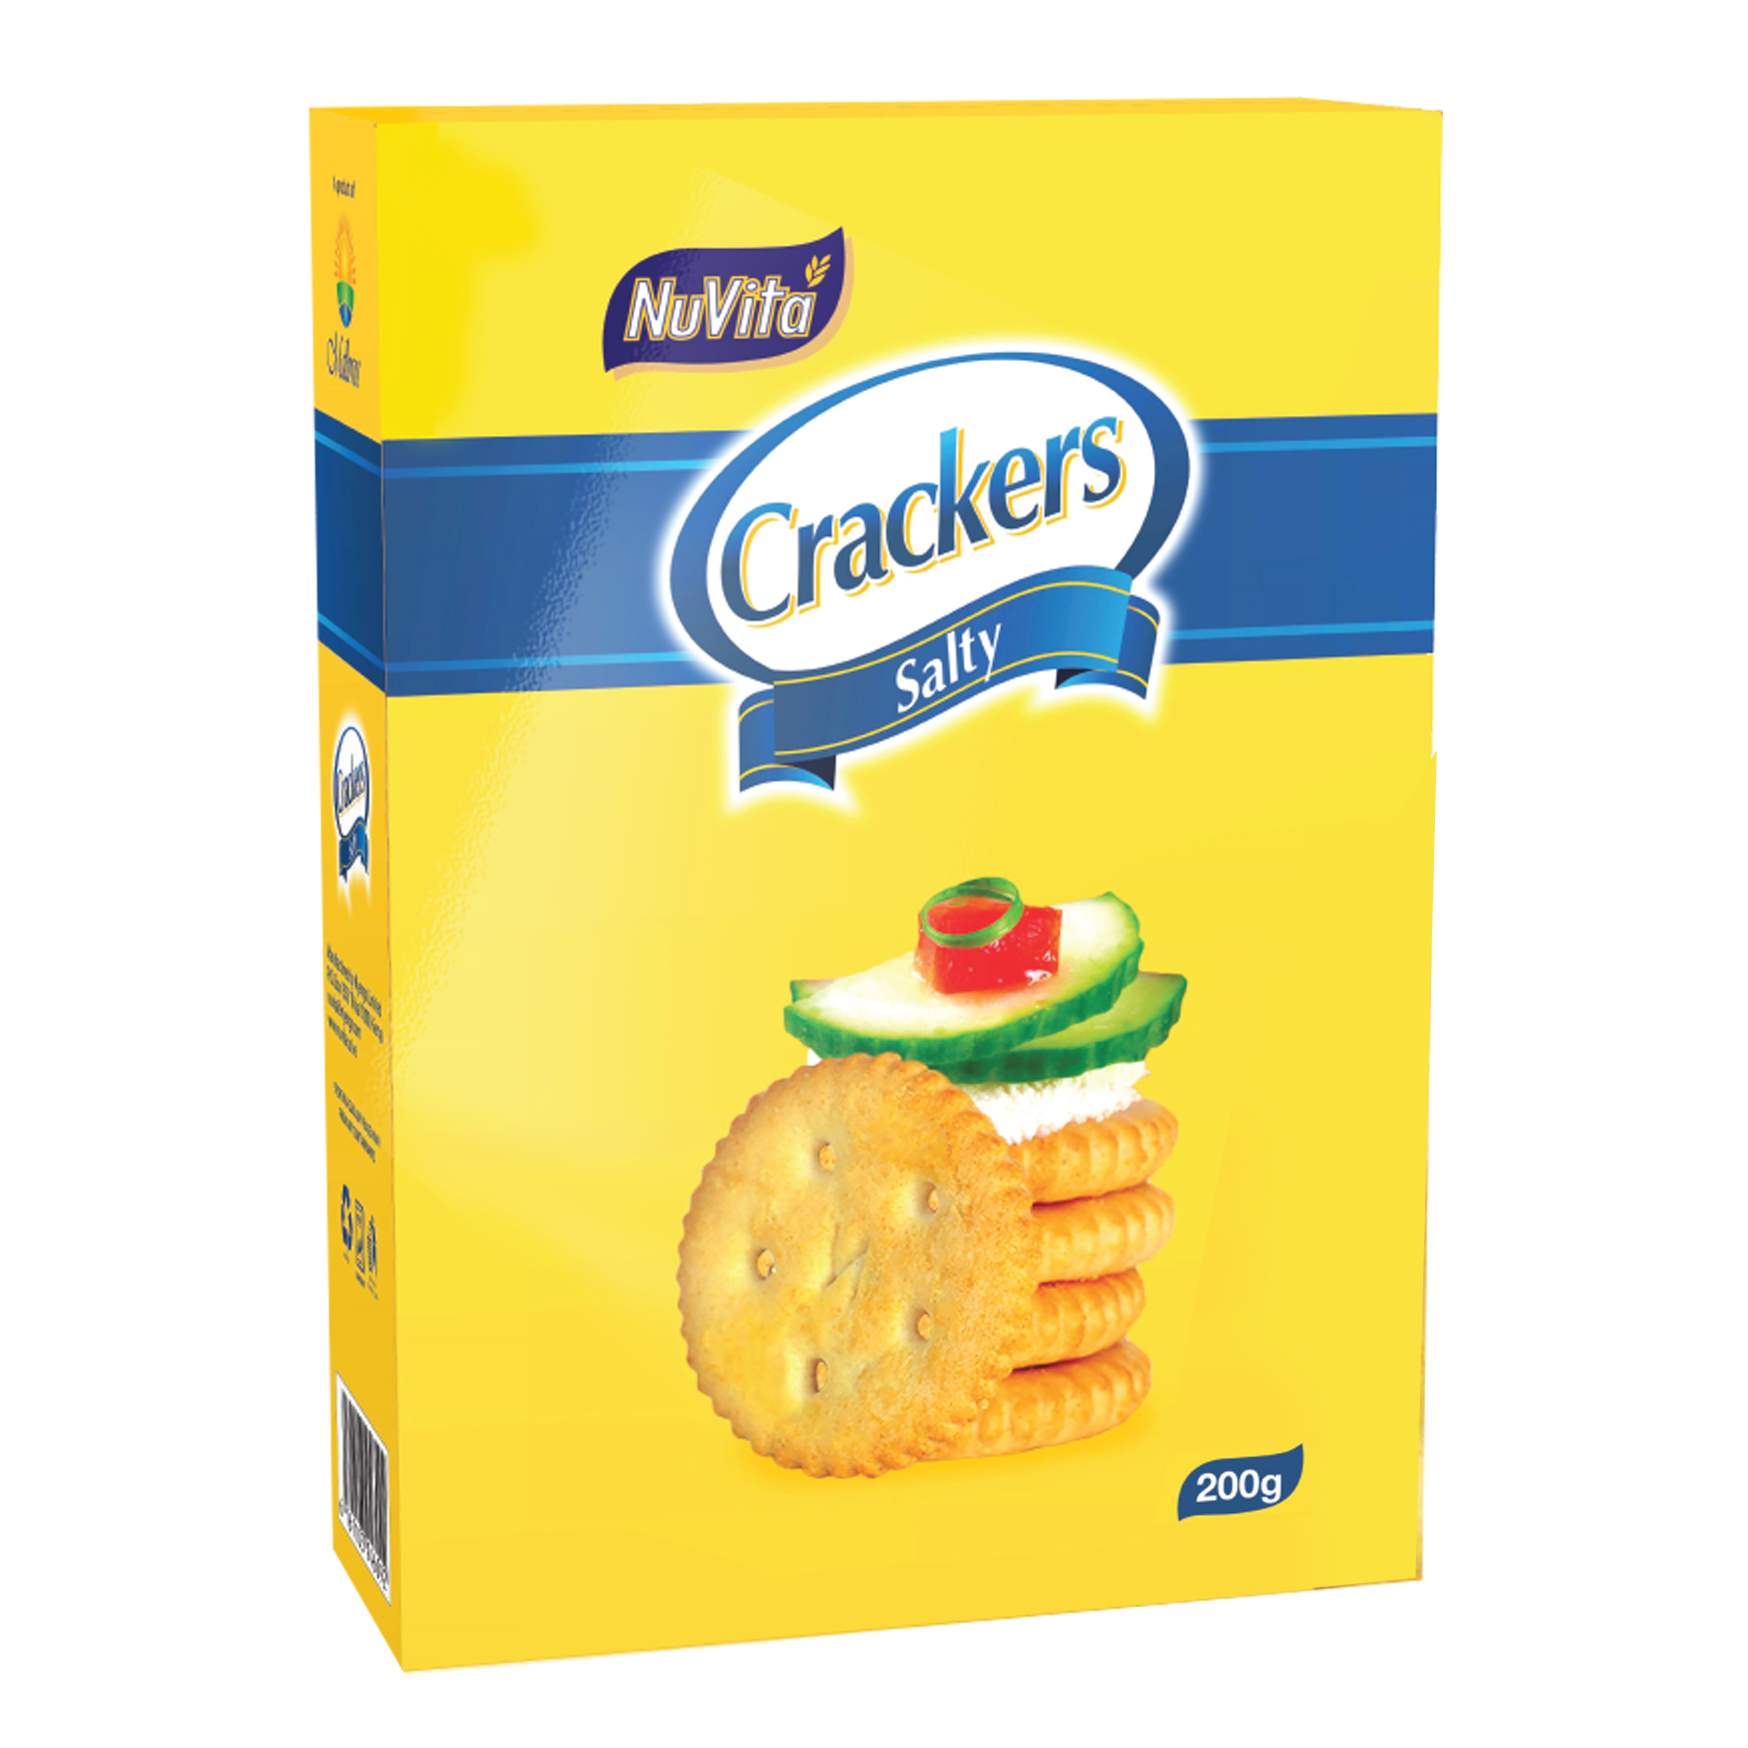 NuVita Crackers